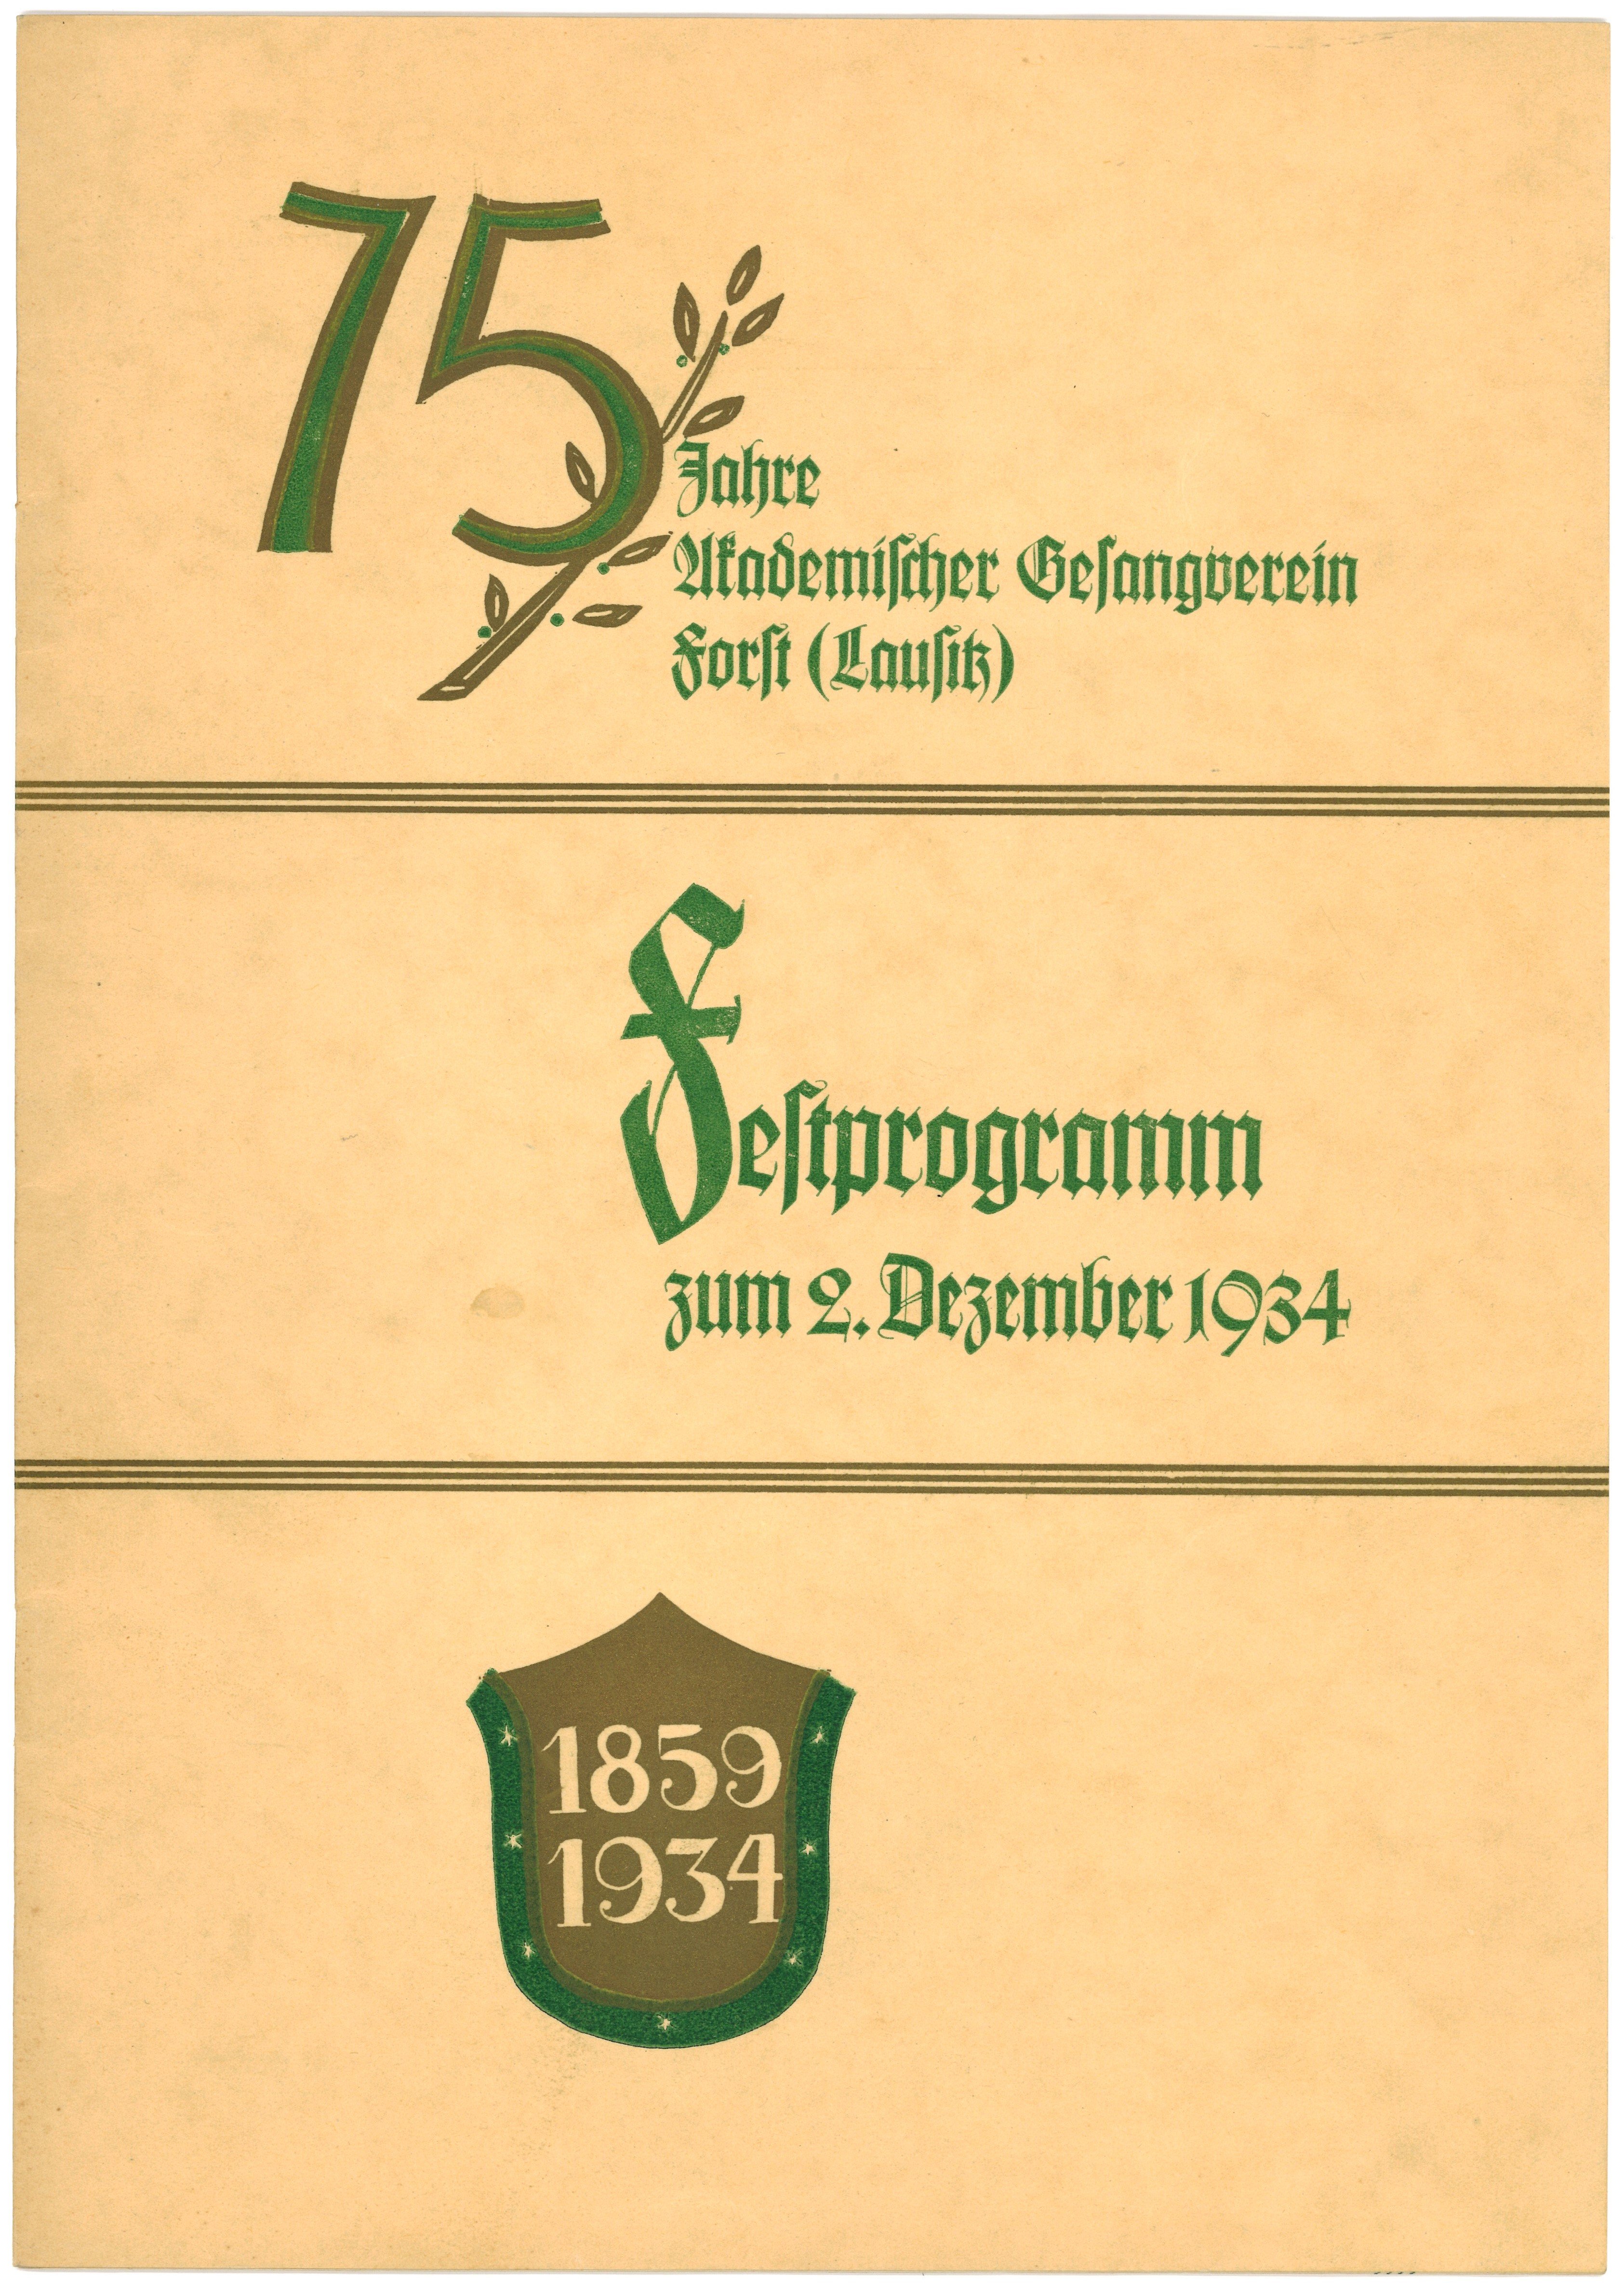 Festprogramm zur 75-Jahrfeier des Akademischen Gesangvereins Forst (Lausitz) 1934 (Landesgeschichtliche Vereinigung für die Mark Brandenburg e.V., Archiv CC BY)